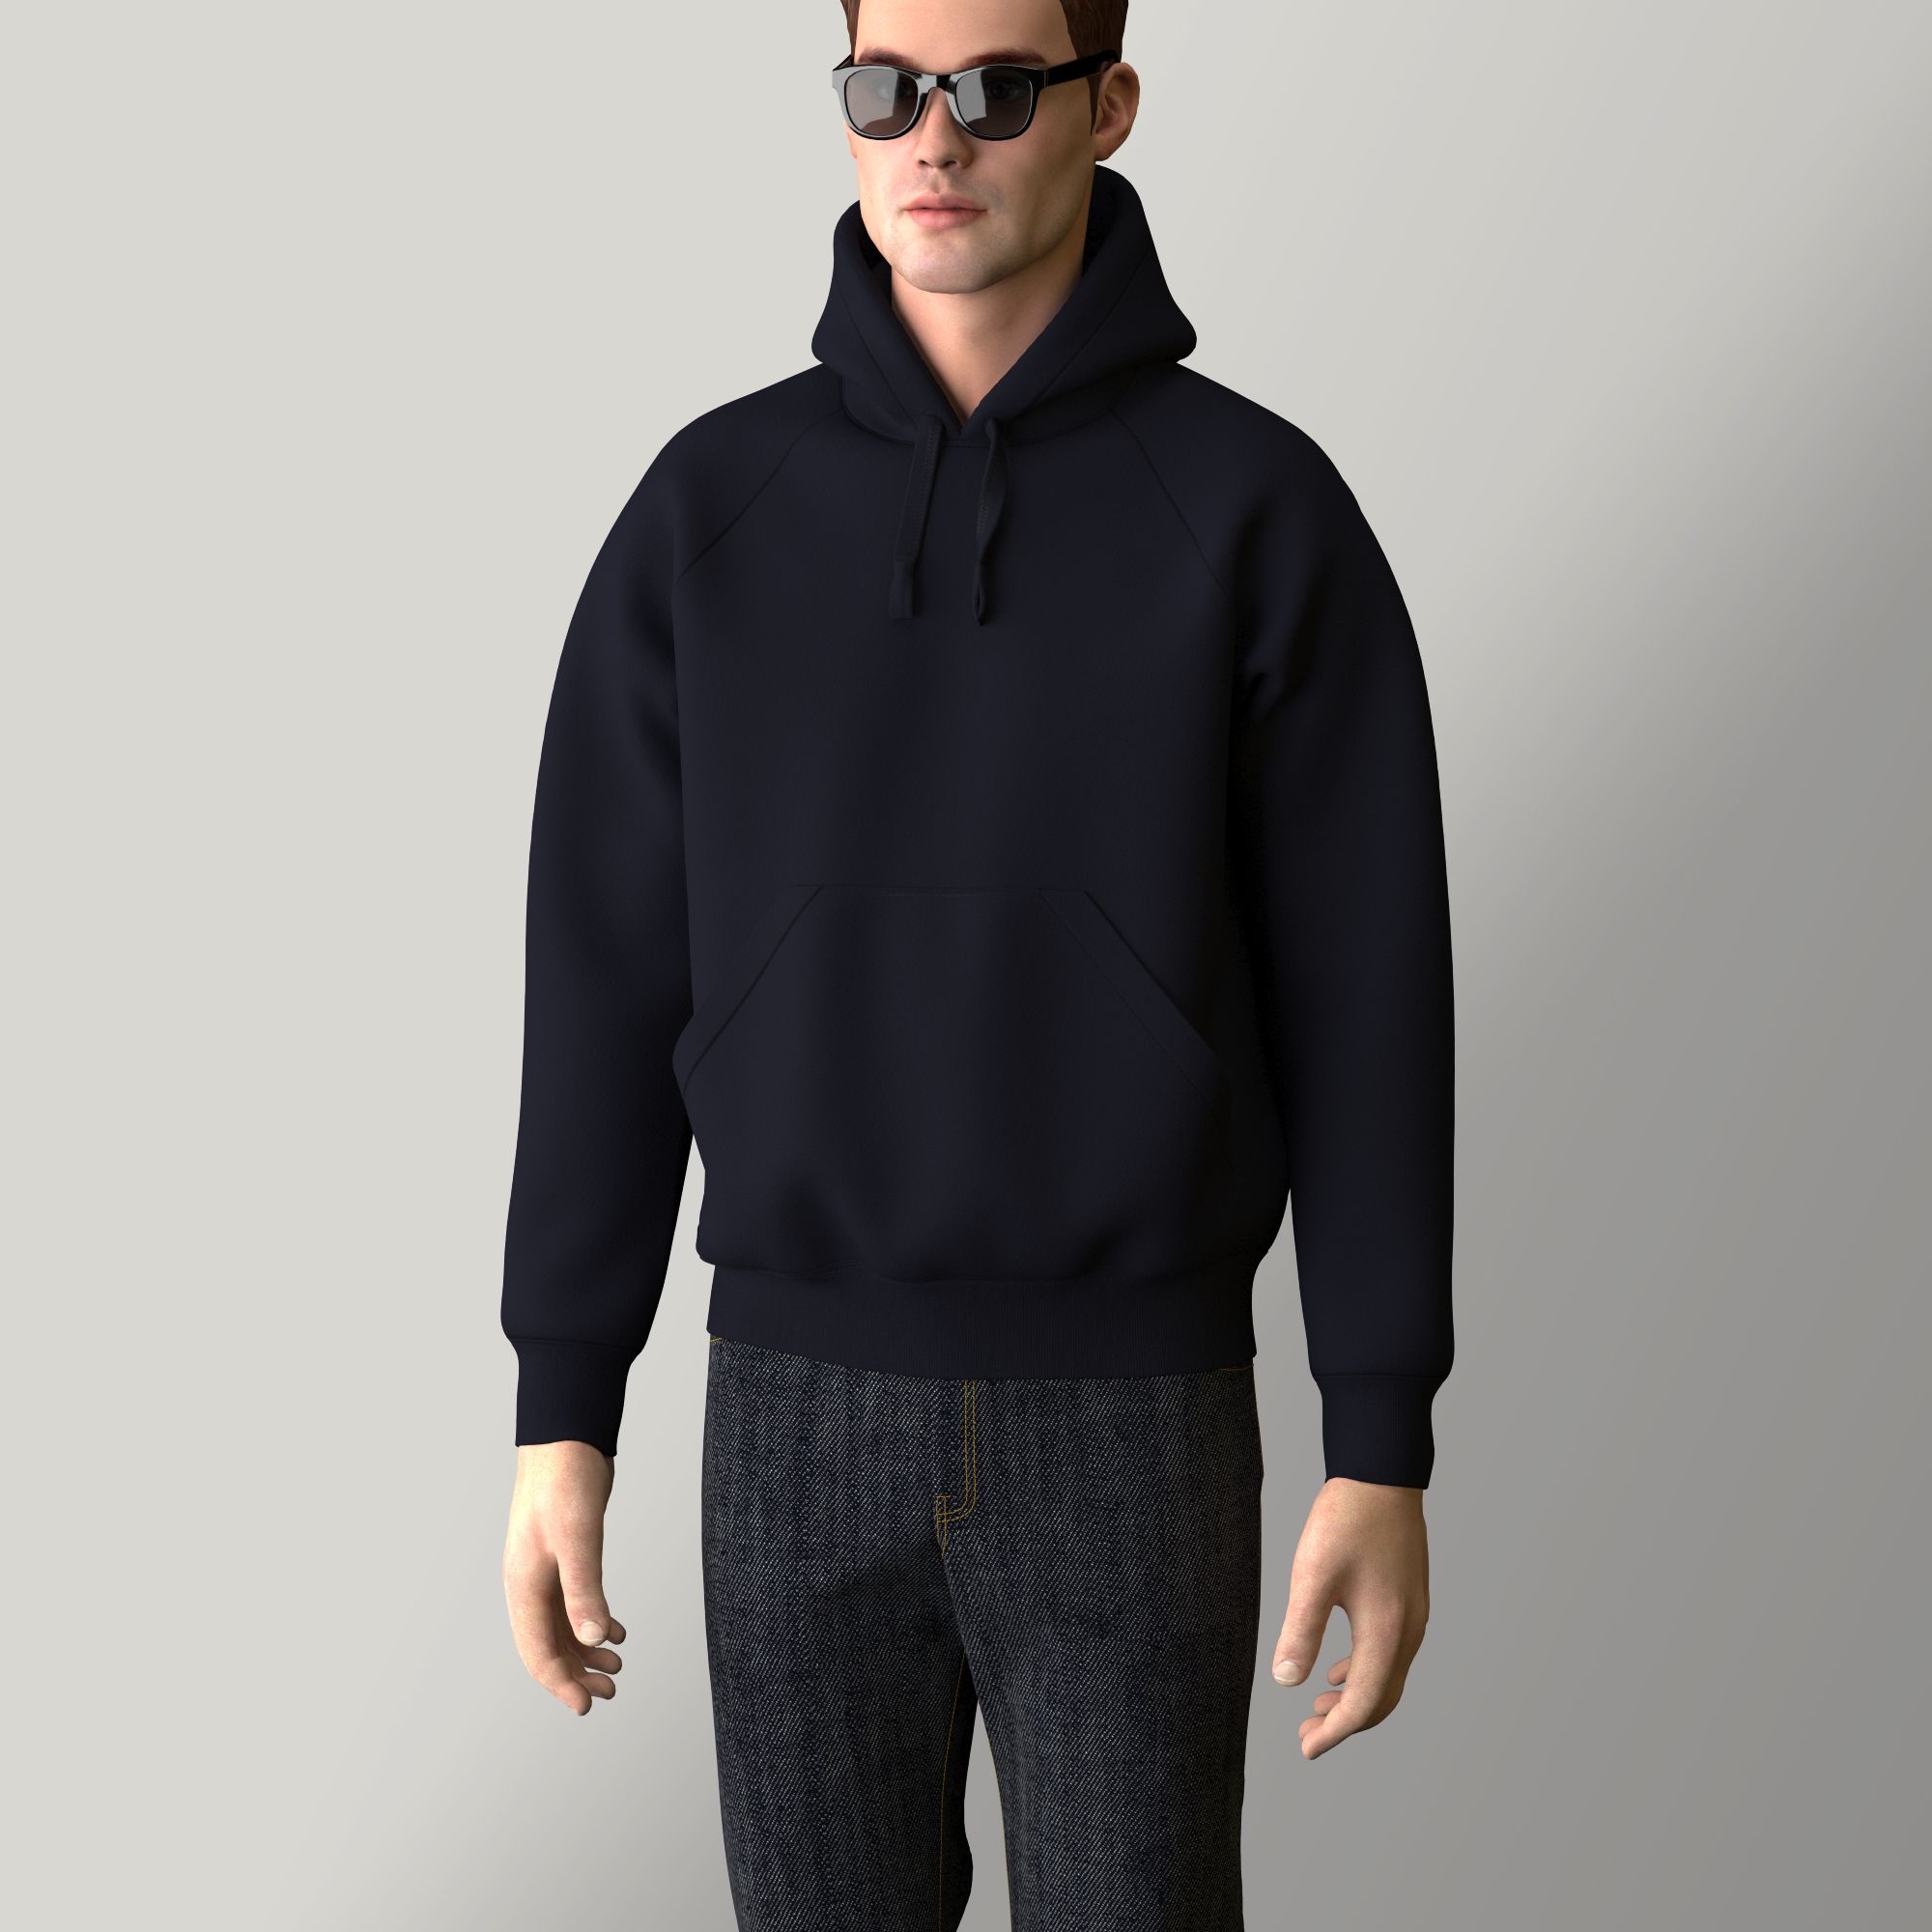 Sweat-shirt à capuche coton biologique fabriqué à Paris PhilippeGaber  Couleur Noir Taille sweatshirt XS-32